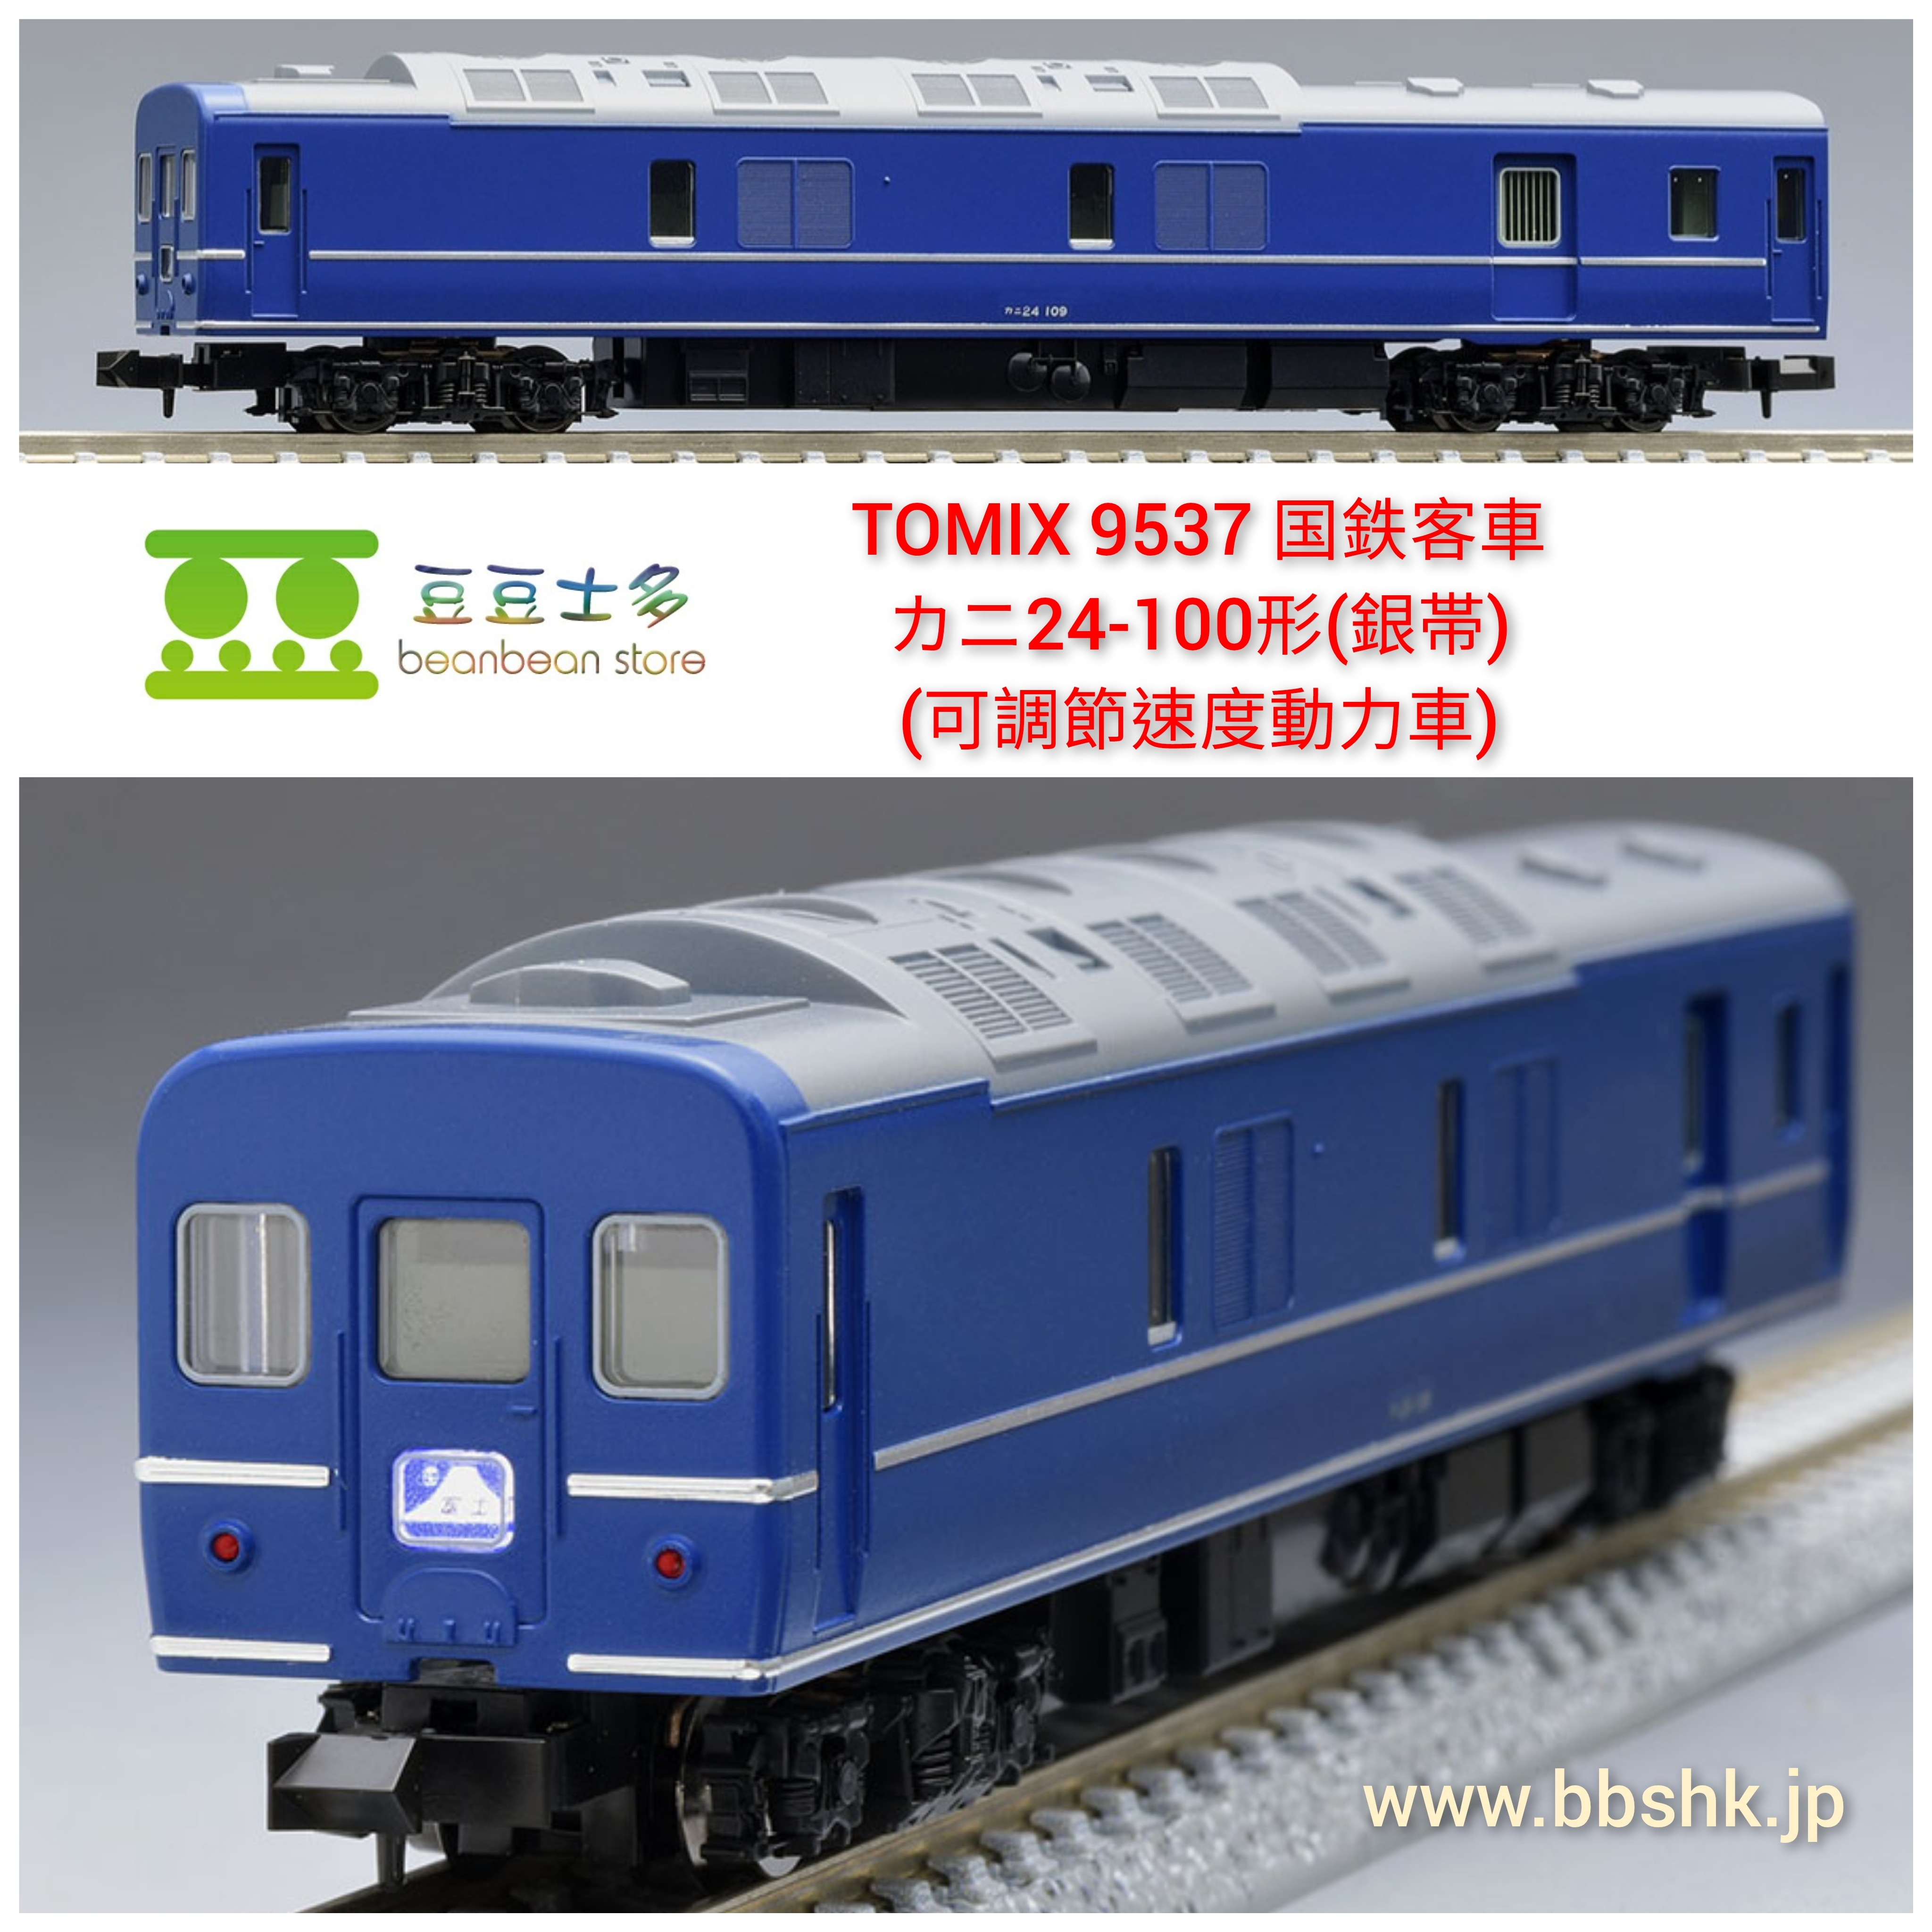 TOMIX 9537 国鉄客車 カニ24-100形 (銀帯) < 可調節速度動力車>